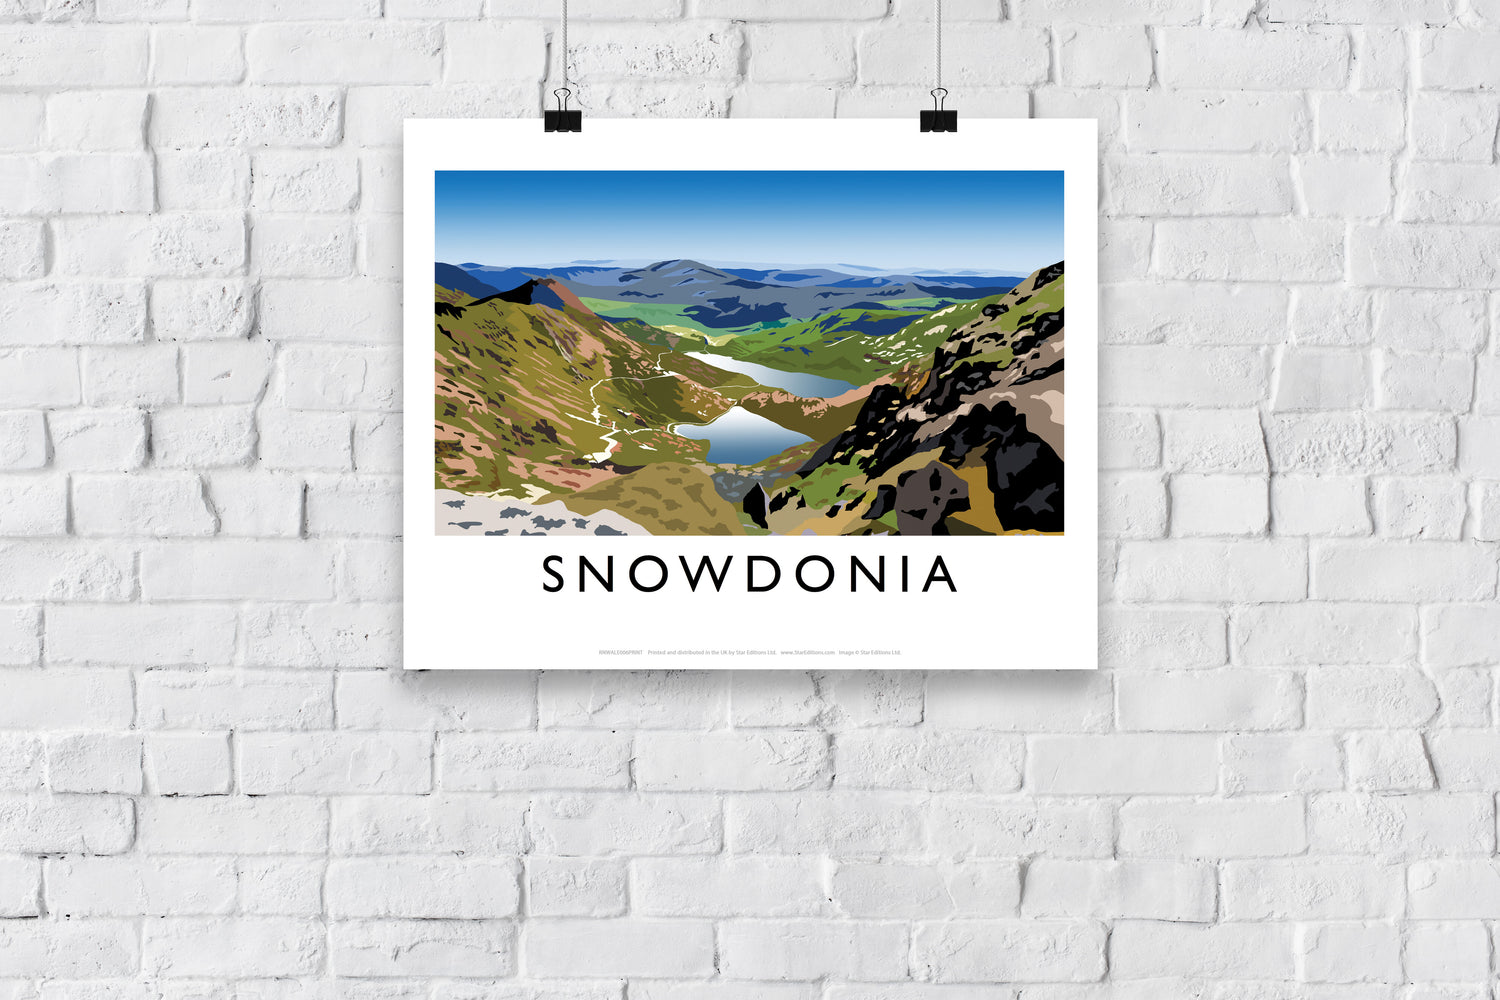 Snowdonia, Wales - Art Print